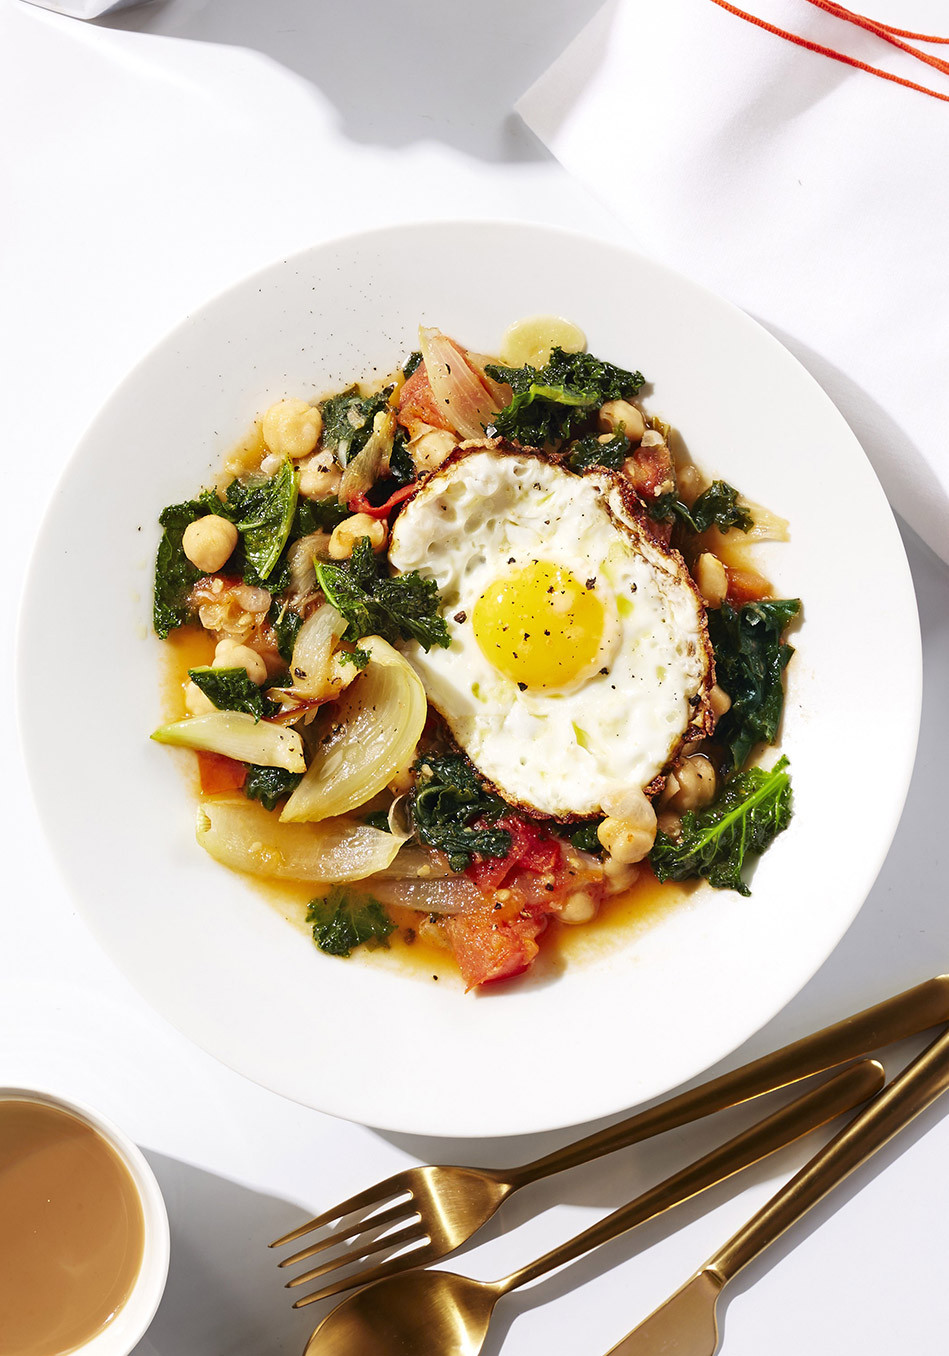 Healthy Egg Recipes For Dinner
 Egg Recipes for Brunch Dinner or Breakfast